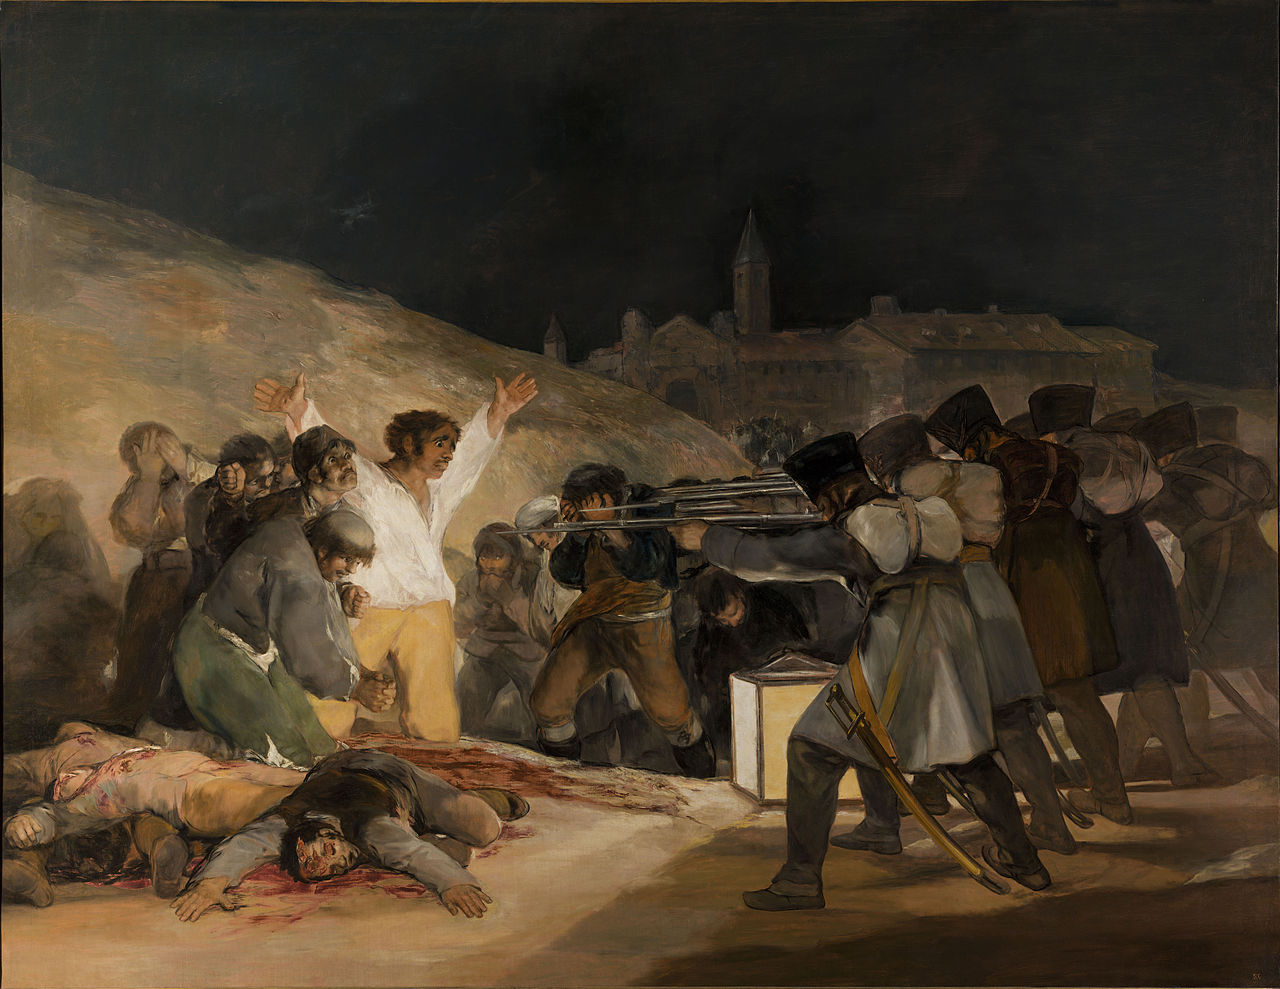 Tres de Mayo 1808 by Francisco Goya - 1814 Museo del Prado